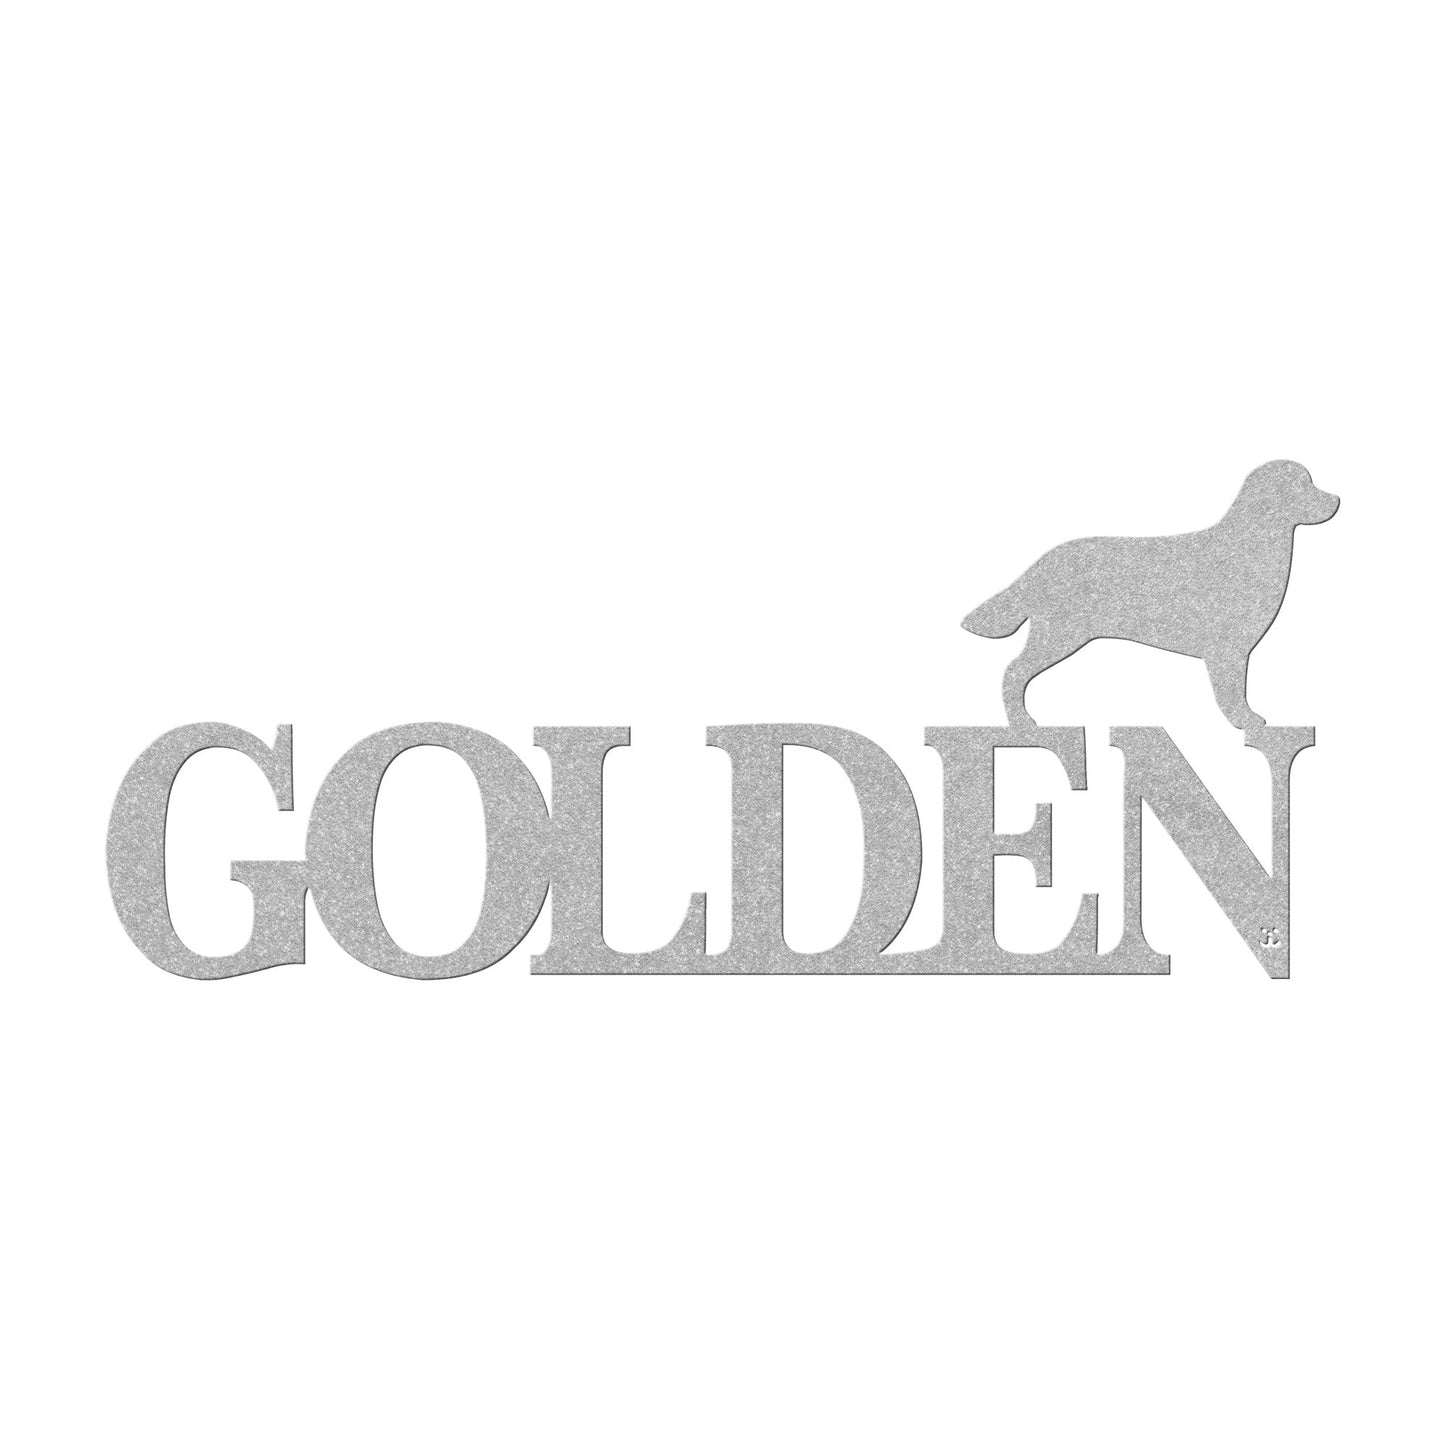 Placa de metal Golden Retriever - Identidade i-animals